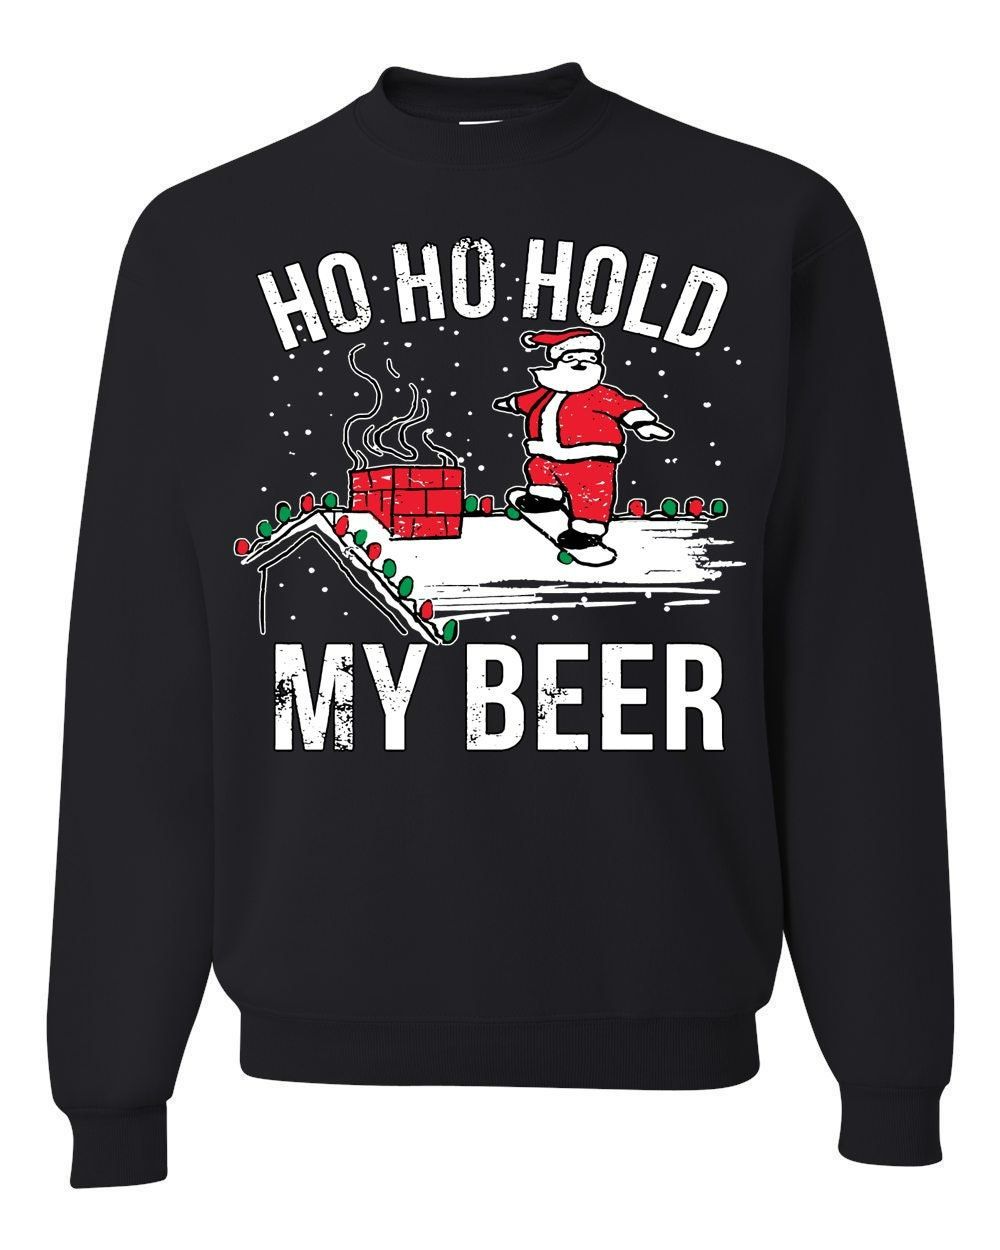 OnCoast Ho Ho Hold My Beer  Santa Claus Ugly Christmas Sweater  Funny Ugly Christmas Sweater  Holiday Gift